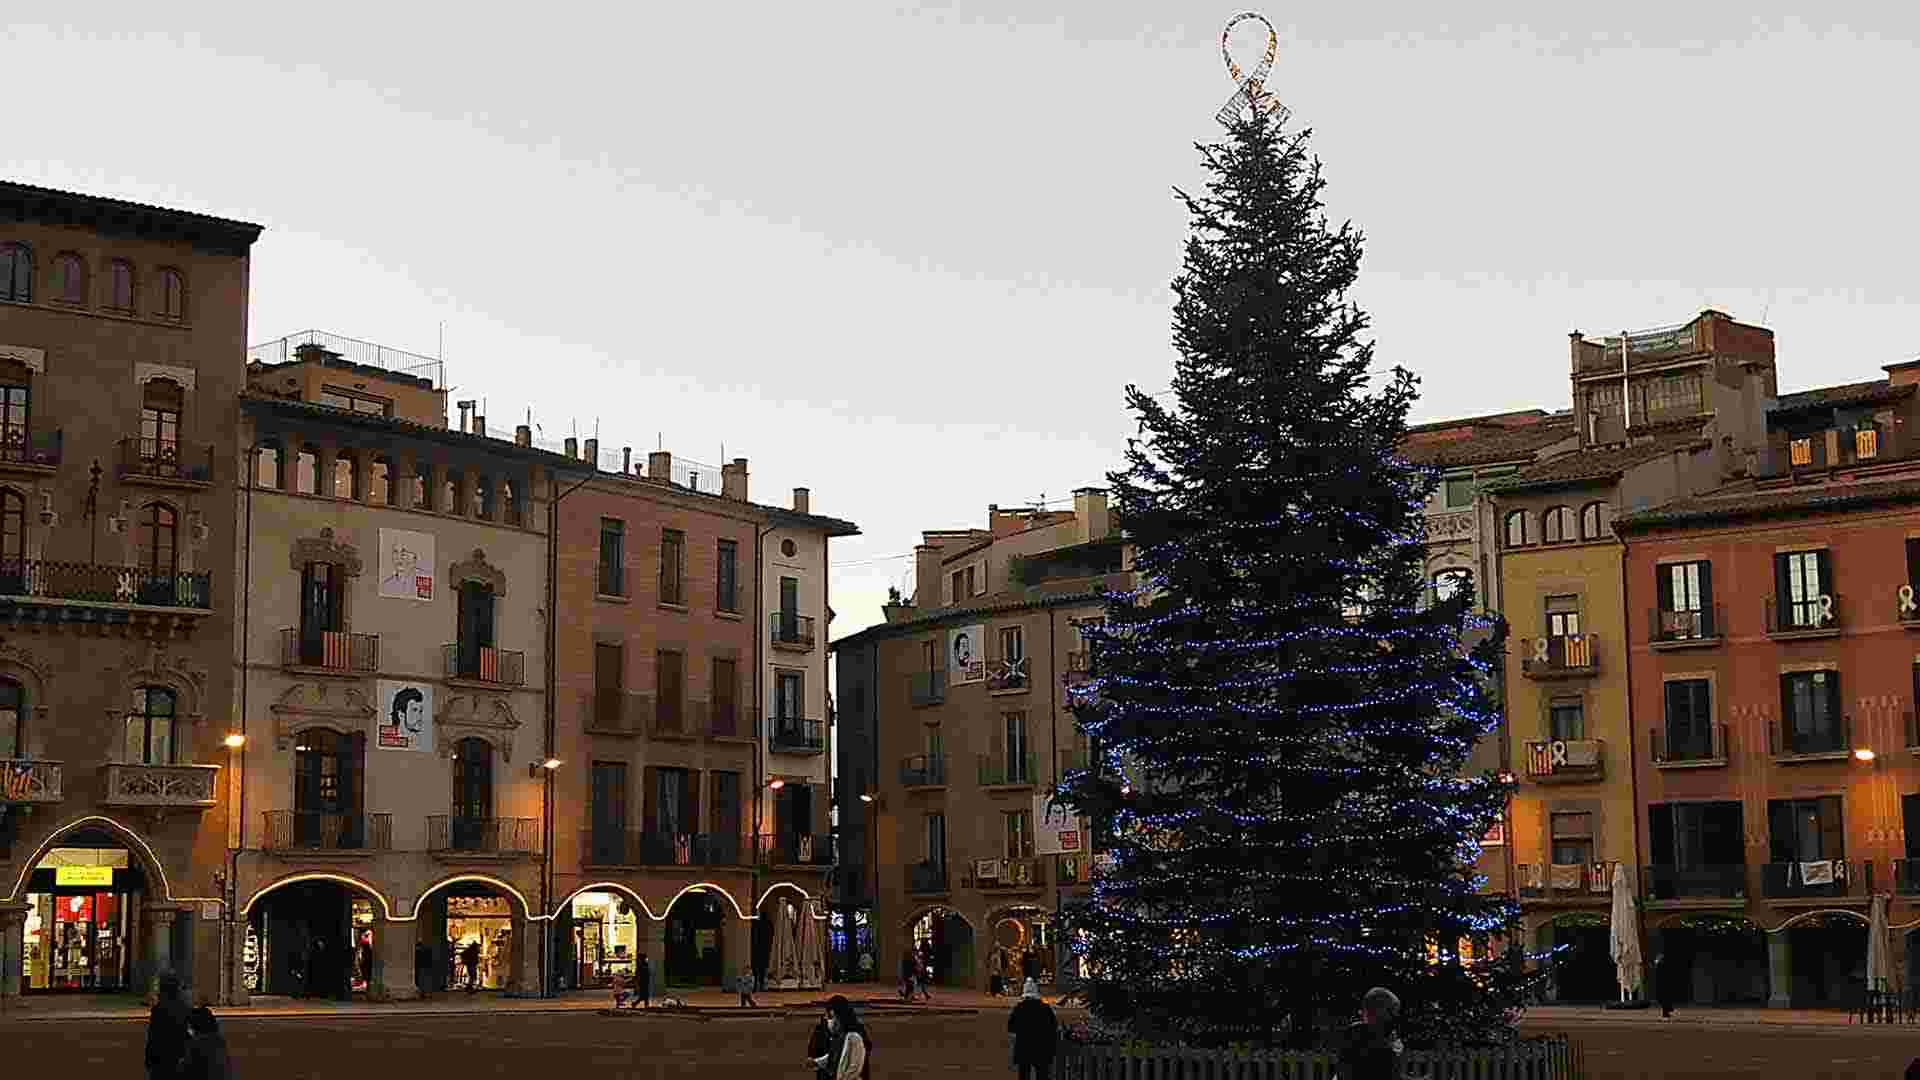 Aquest és el poble de Catalunya més bonic per visitar per Nadal segons la IA